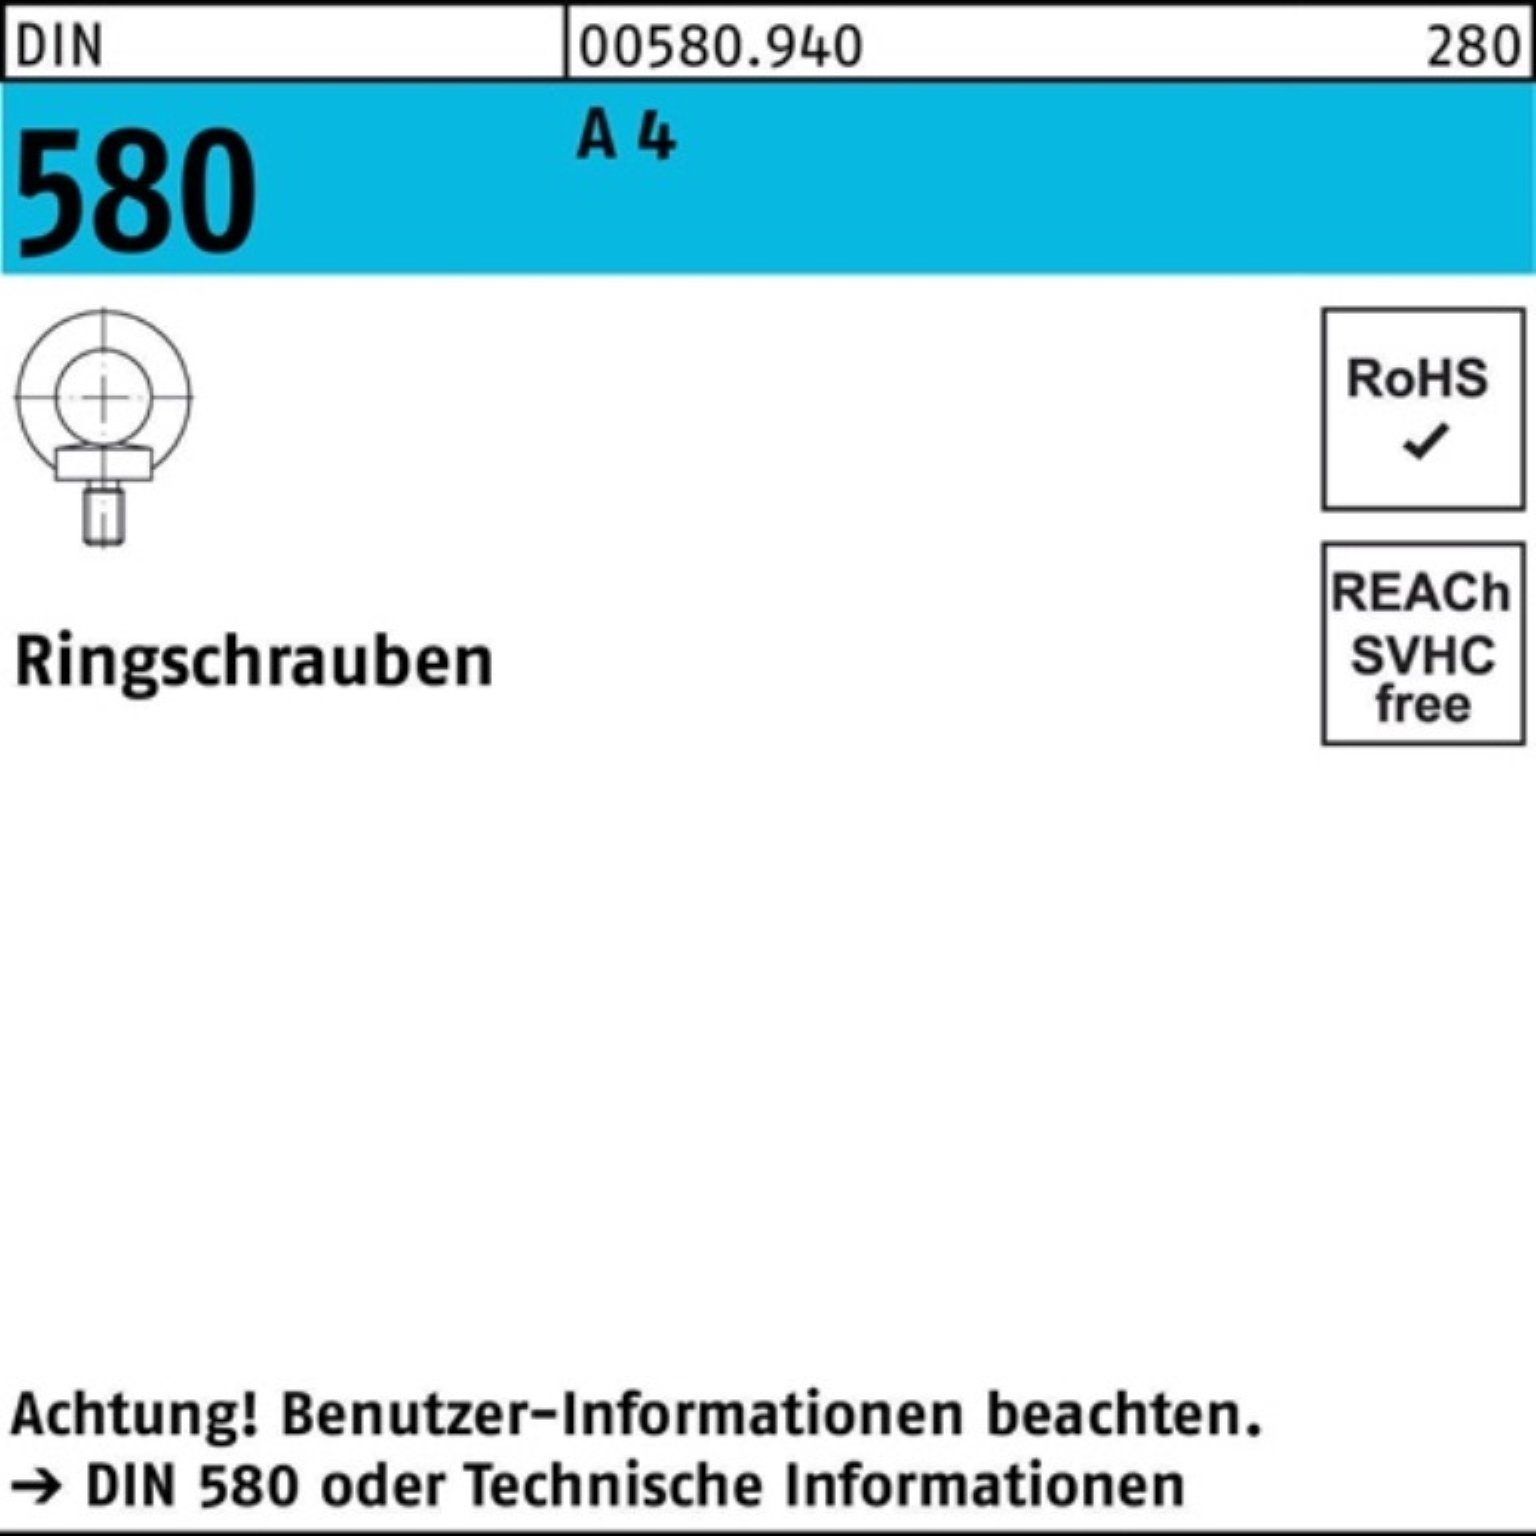 Reyher Schraube 100er Pack Ringschraube DIN 580 M16 A 4 1 Stück DIN 580 A 4 Ringschra